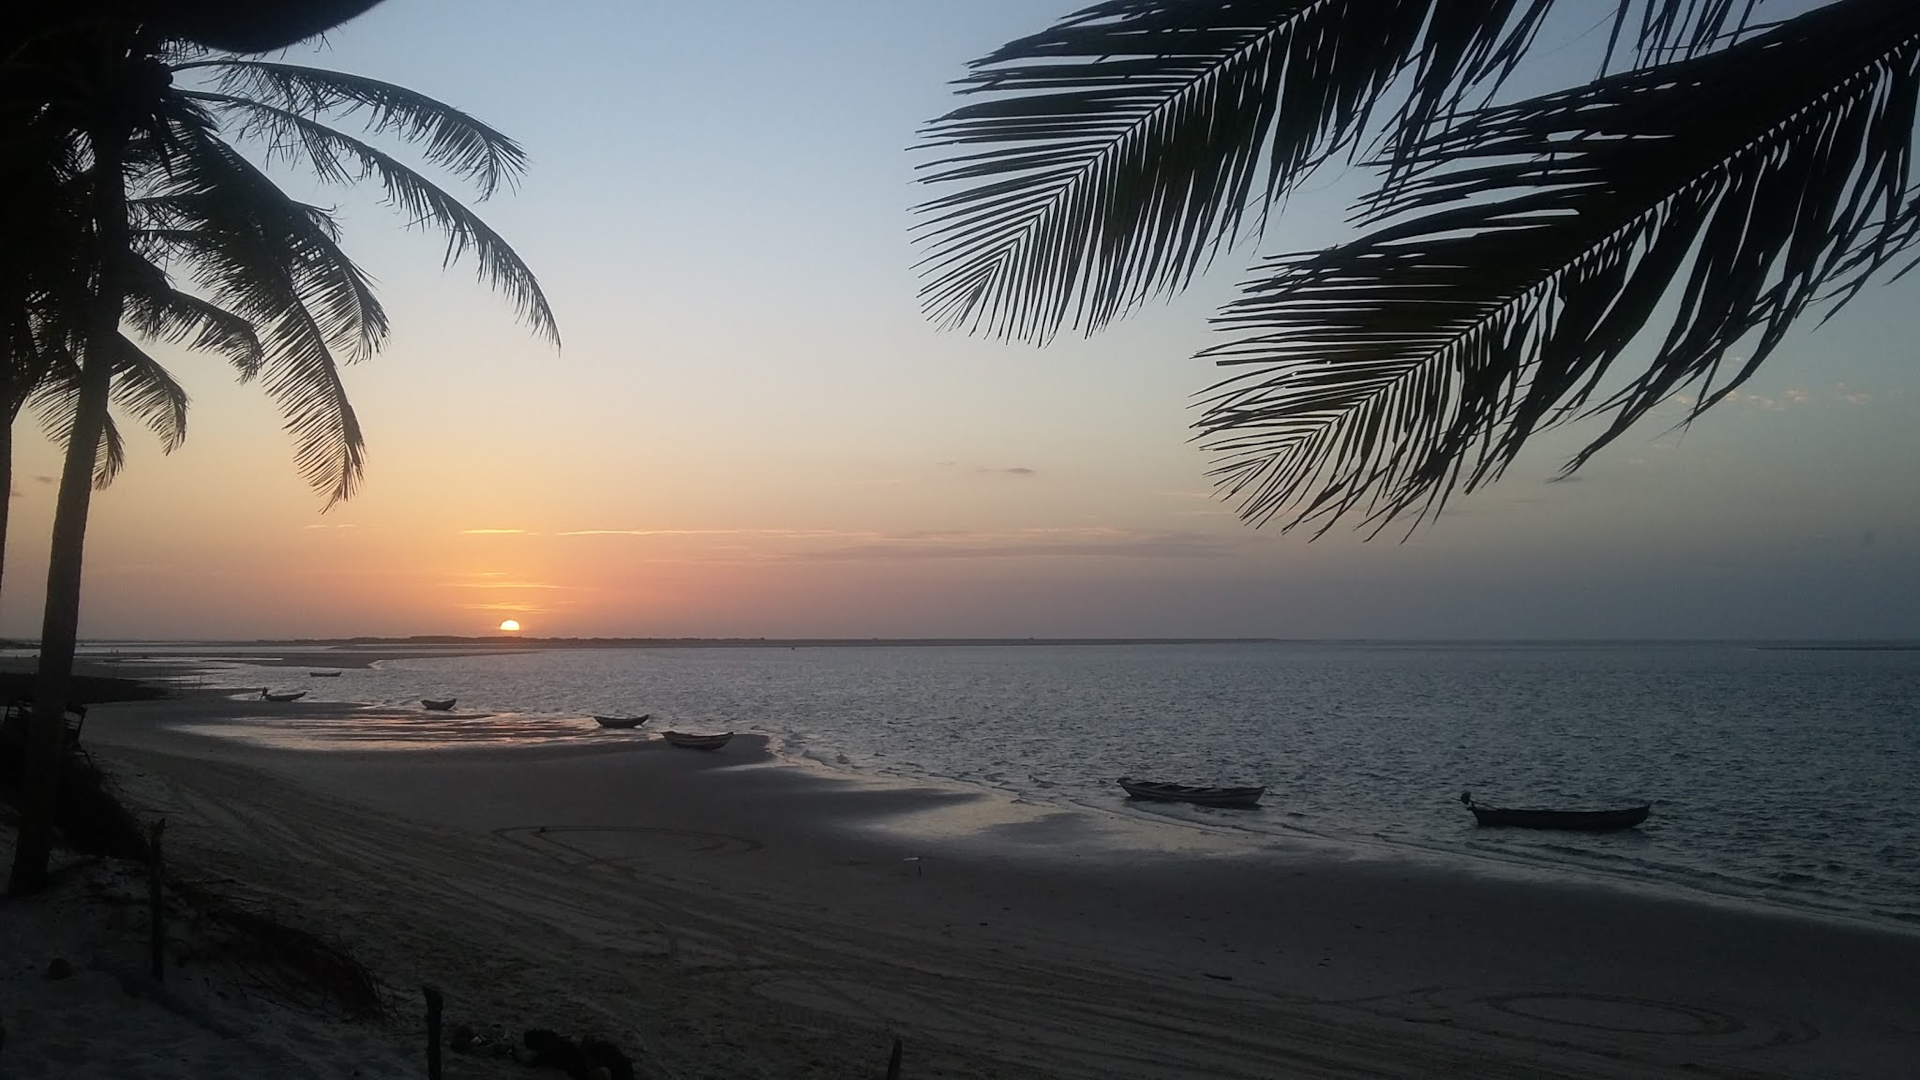 Скачать картинку Закат, Пляж, Бразилия, Фотографии в телефон бесплатно.